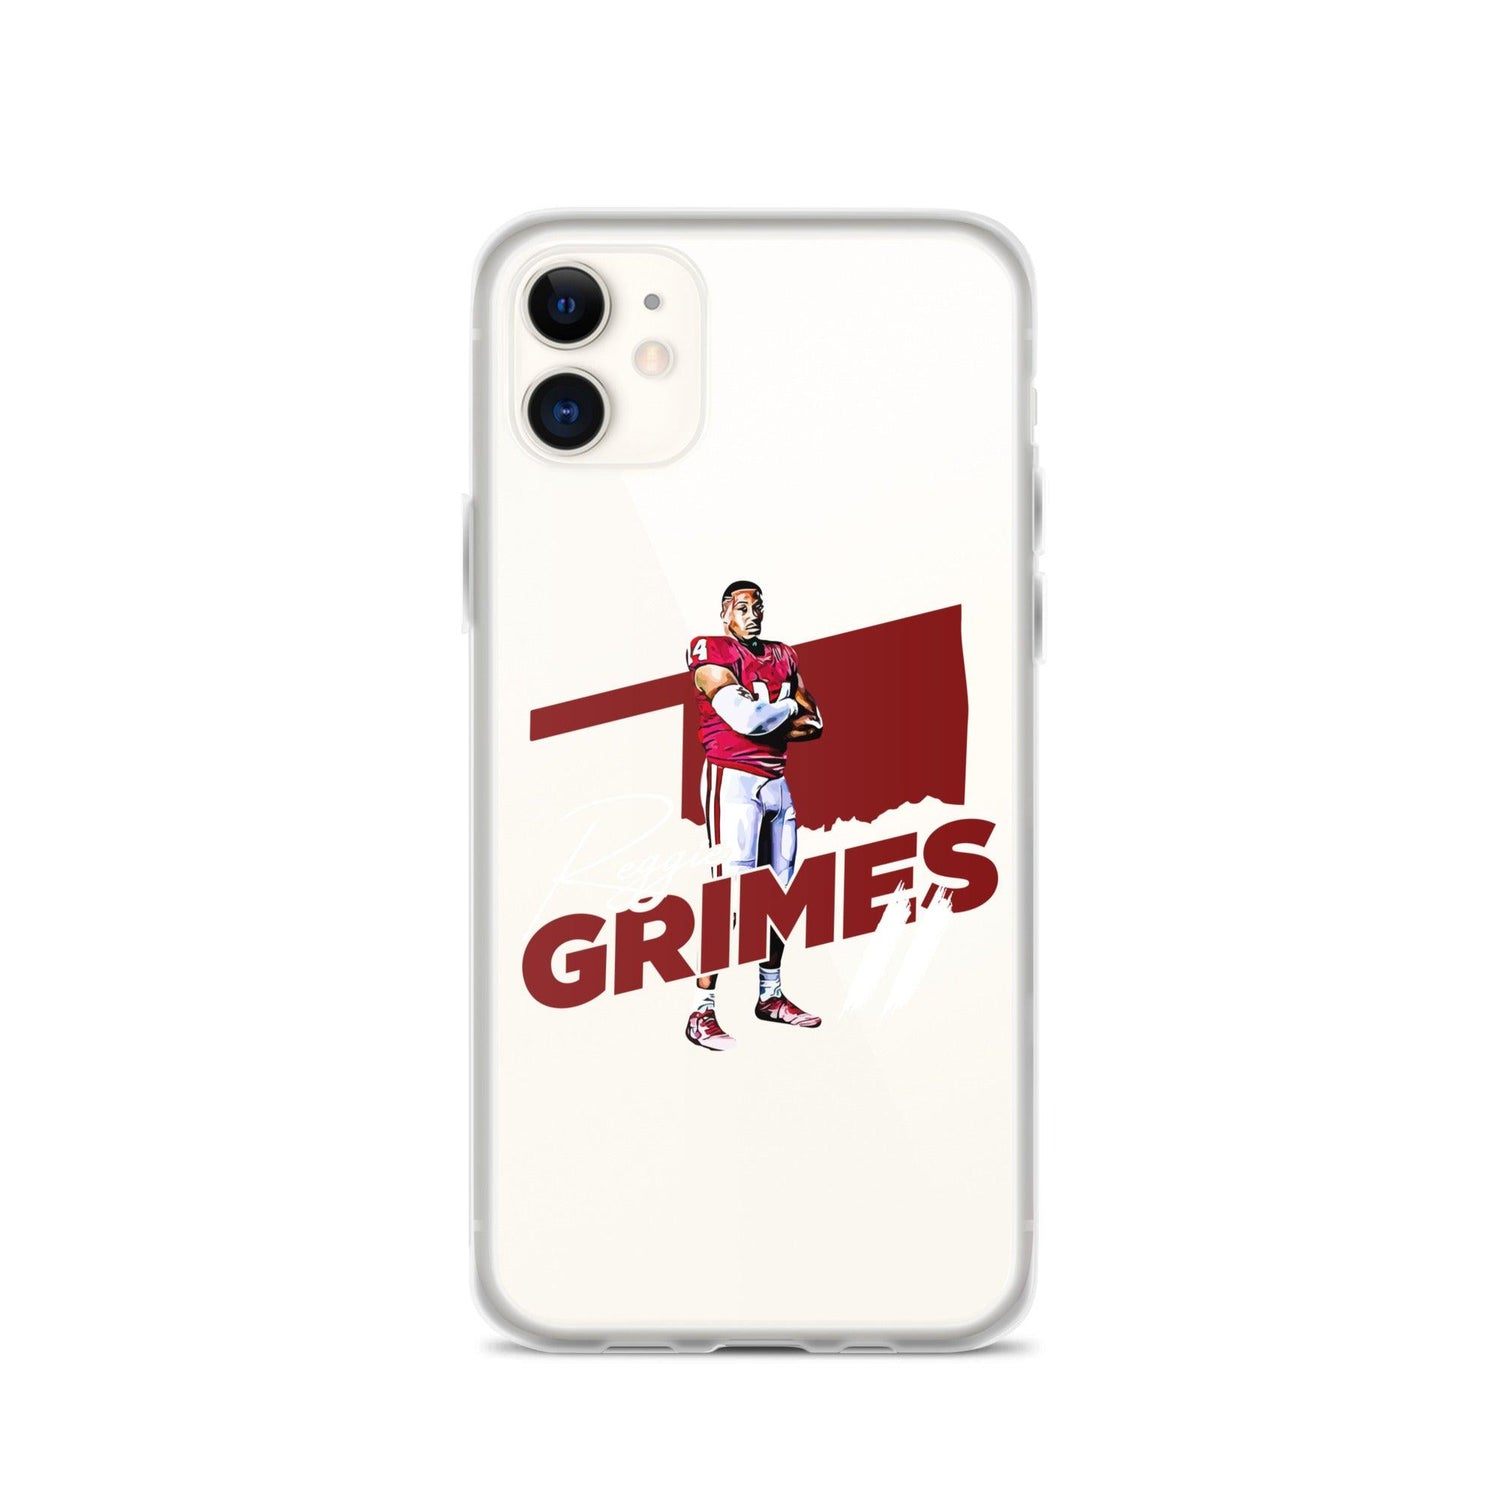 Reggie Grimes II "OKL" iPhone Case - Fan Arch